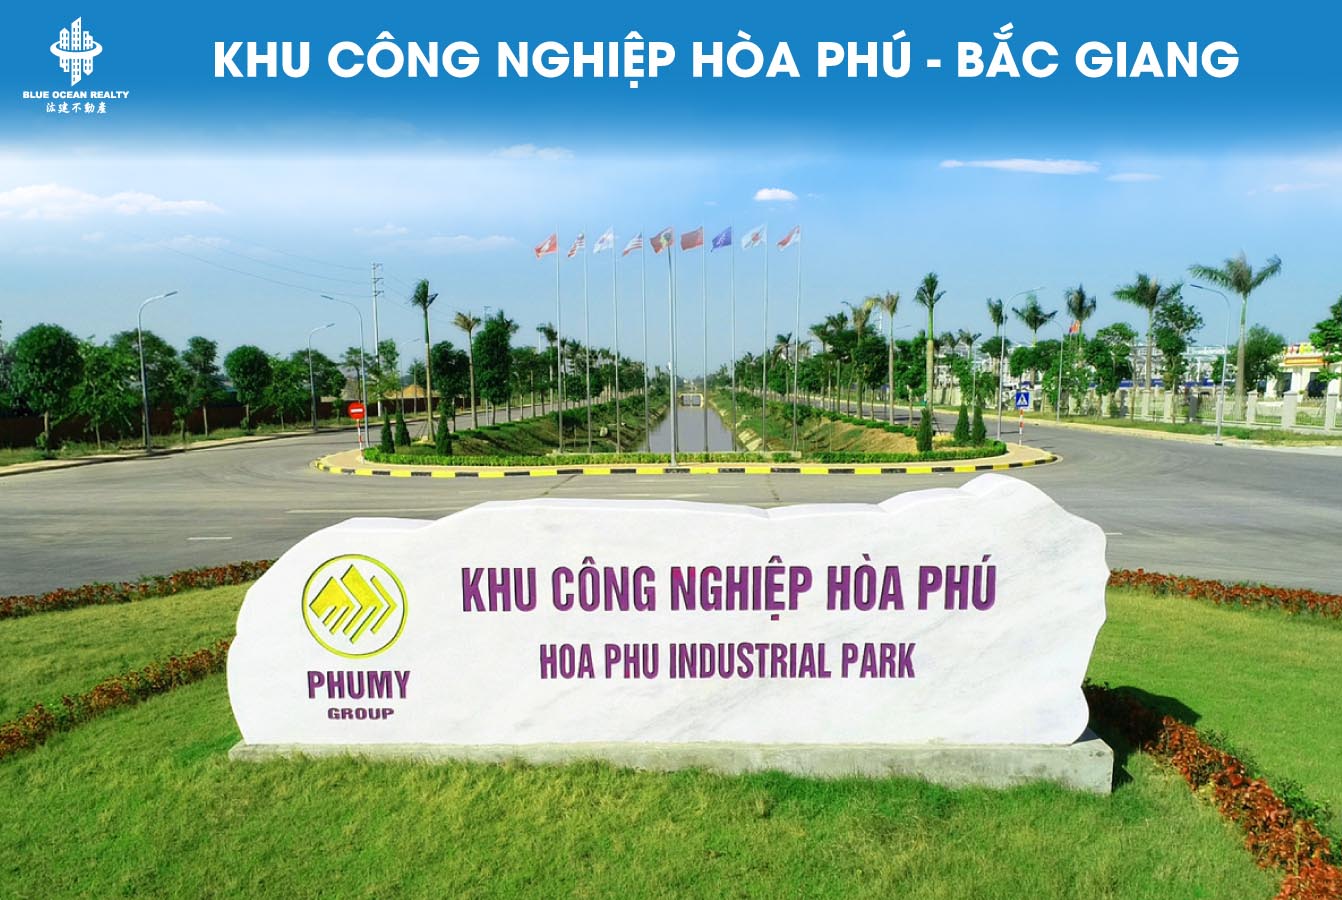 Khu công nghiệp (KCN) Hòa Phú - Bắc Giang